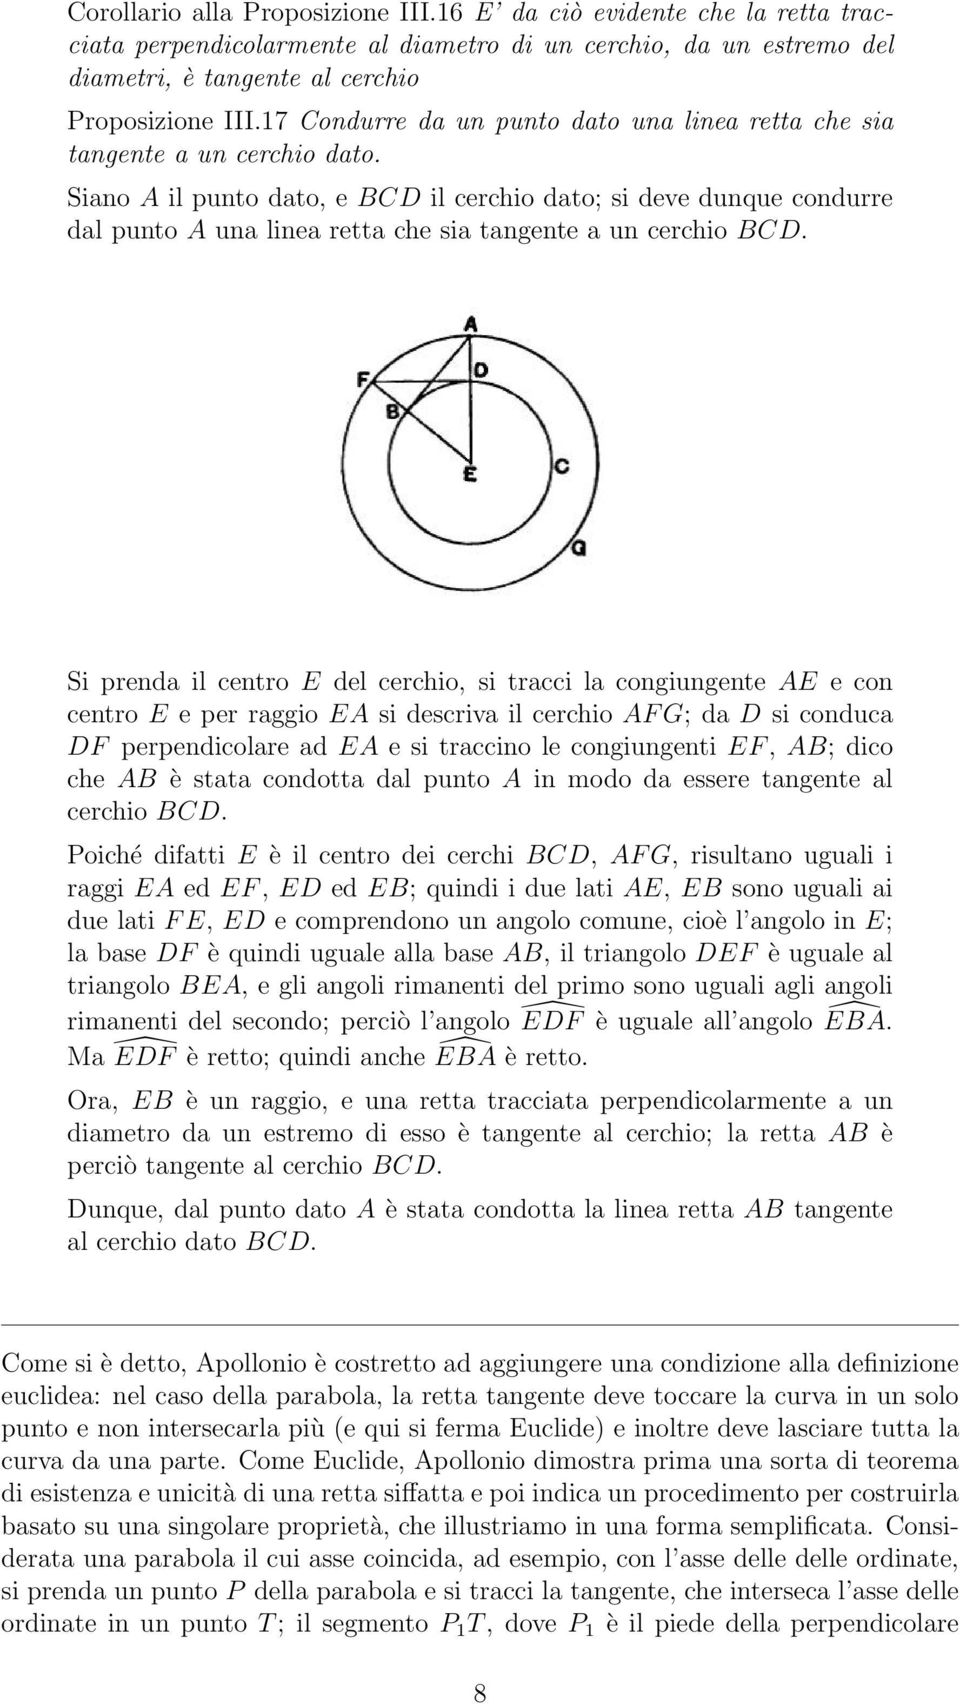 Siano A il punto dato, e BCD il cerchio dato; si deve dunque condurre dal punto A una linea retta che sia tangente a un cerchio BCD.